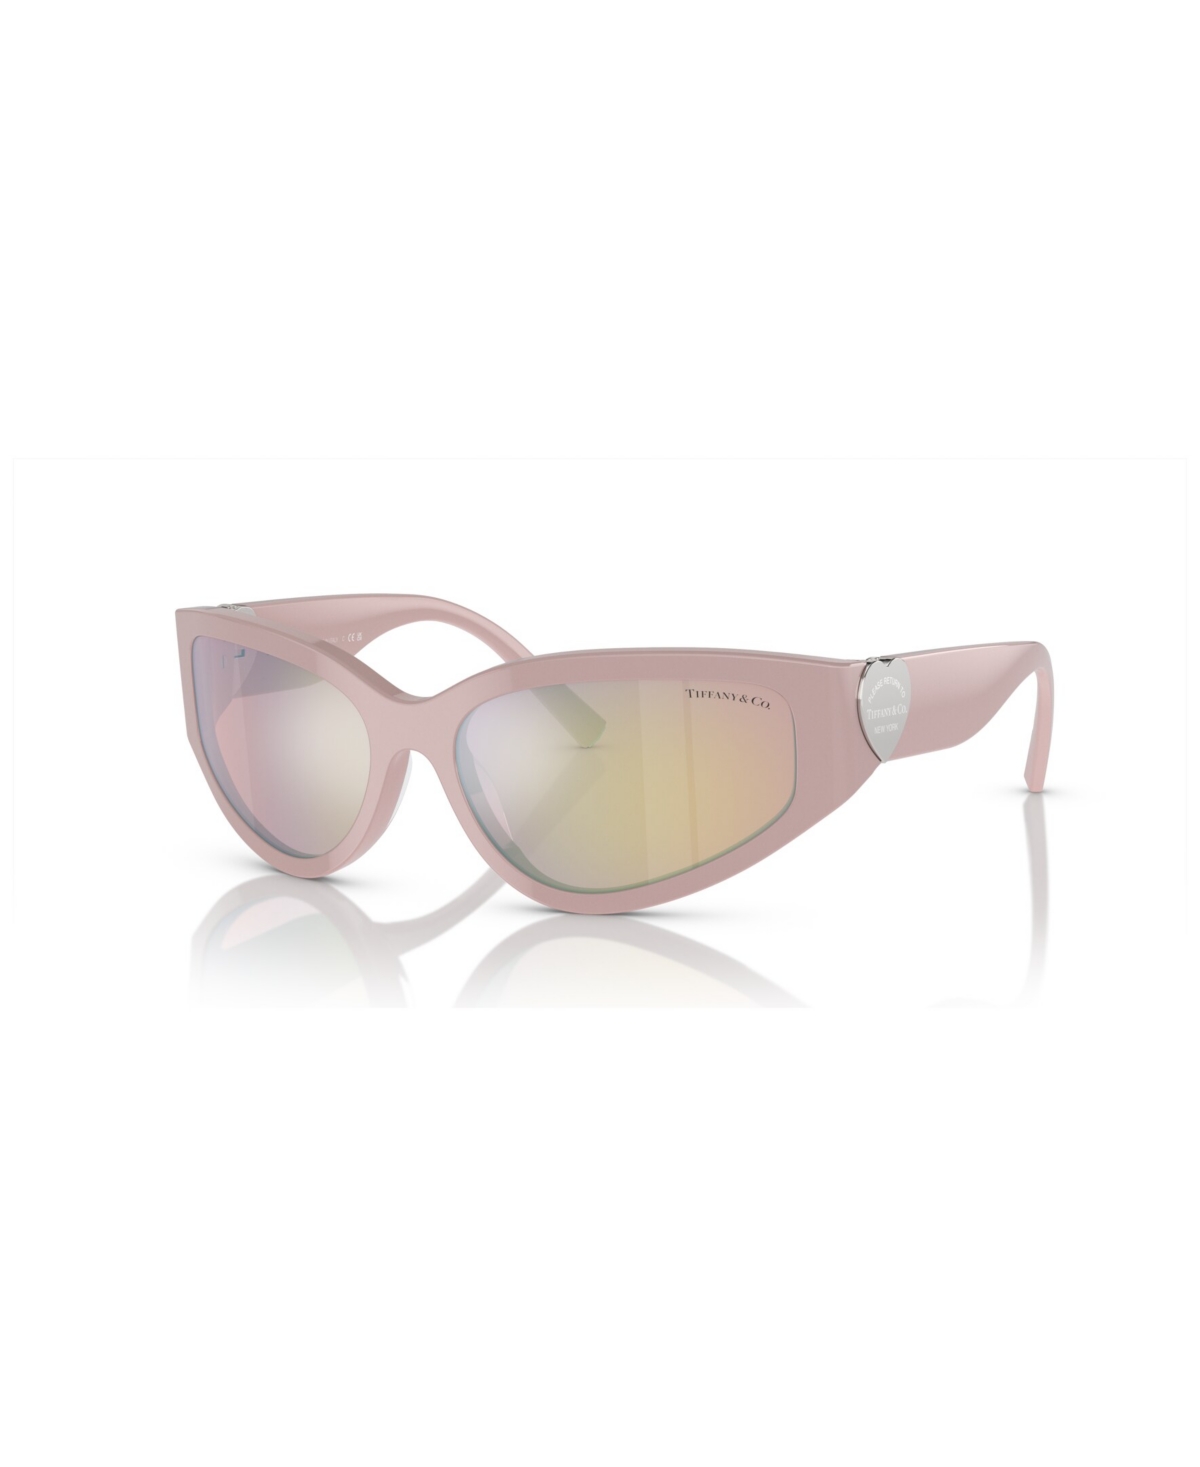 Tiffany & Co Women's Sunglasses, Mirror Tf4217 In Dusty Pink